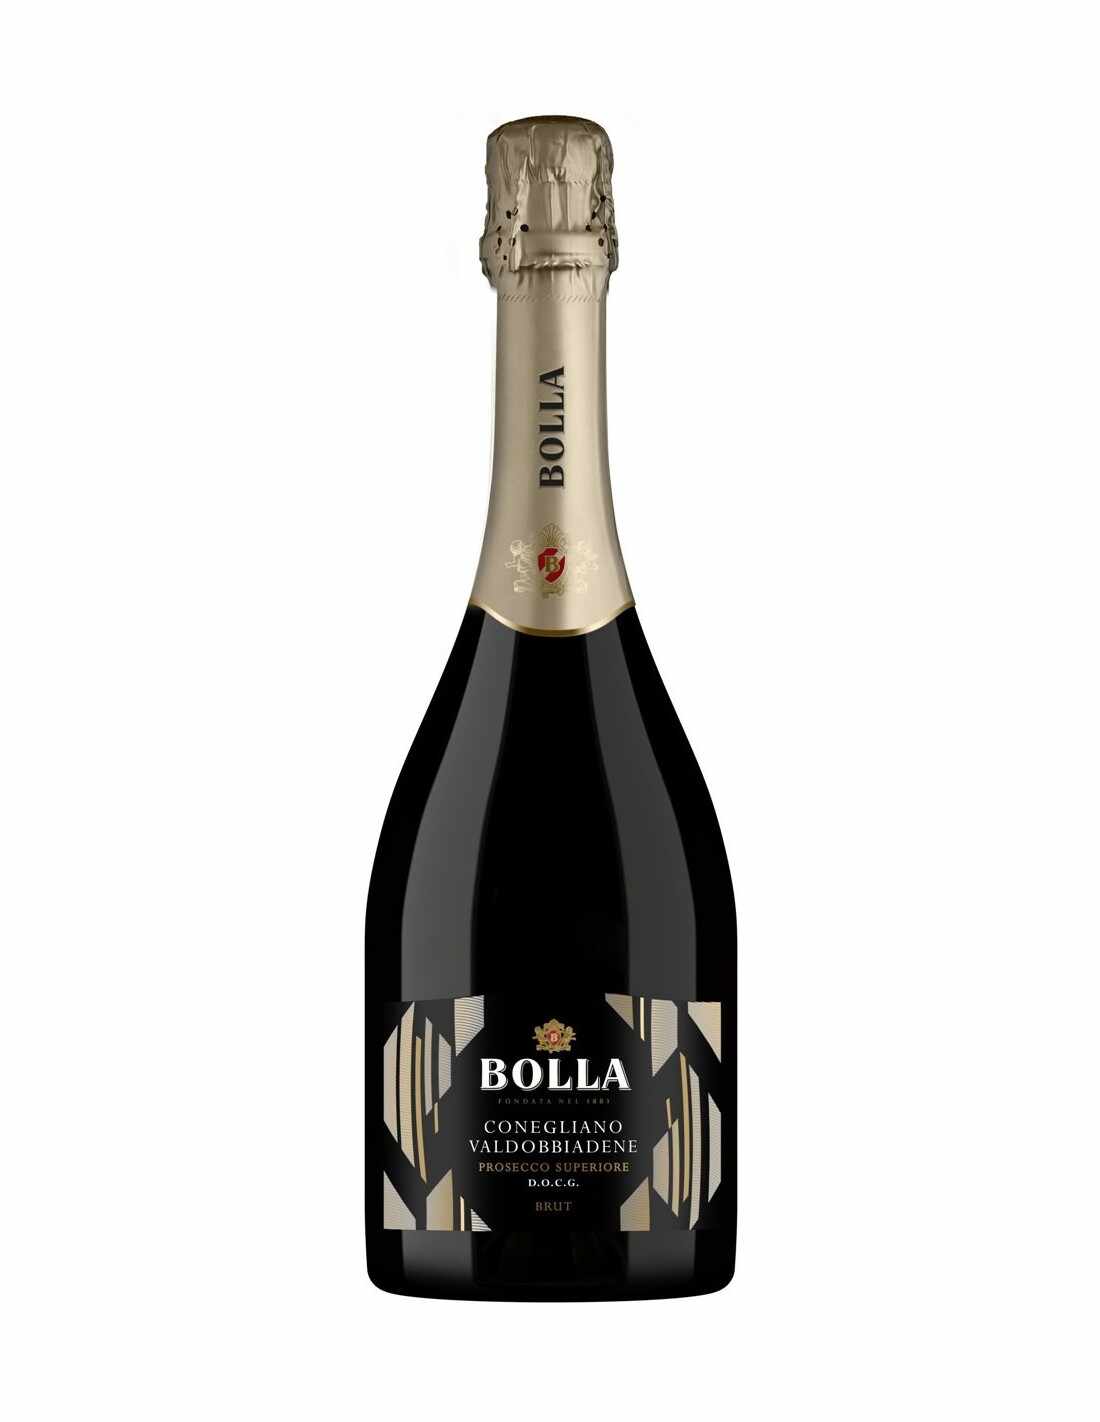 Vin prosecco alb Glera Bolla Conegliano-Valdobbiadene, 0.75L, 11% alc., Italia